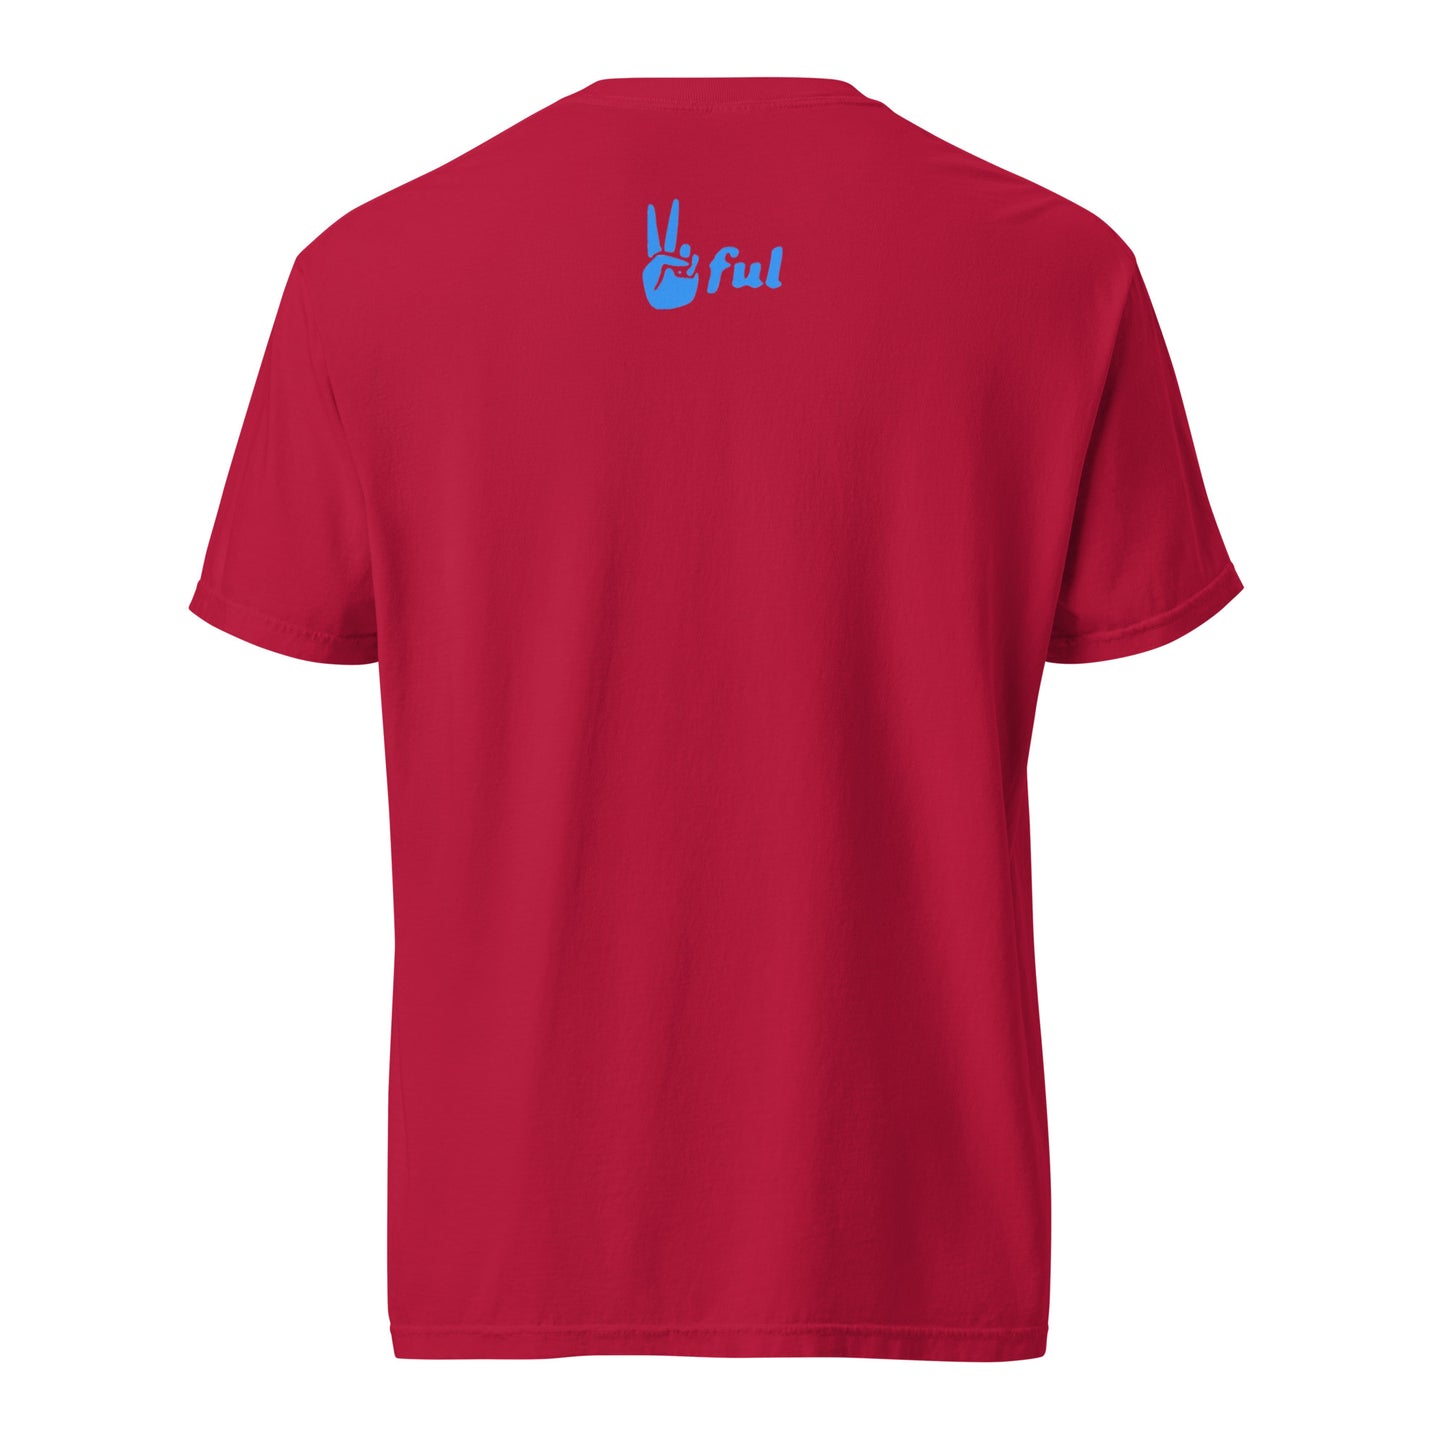 Unisex garment-dyed Hot out heavyweight t-shirt